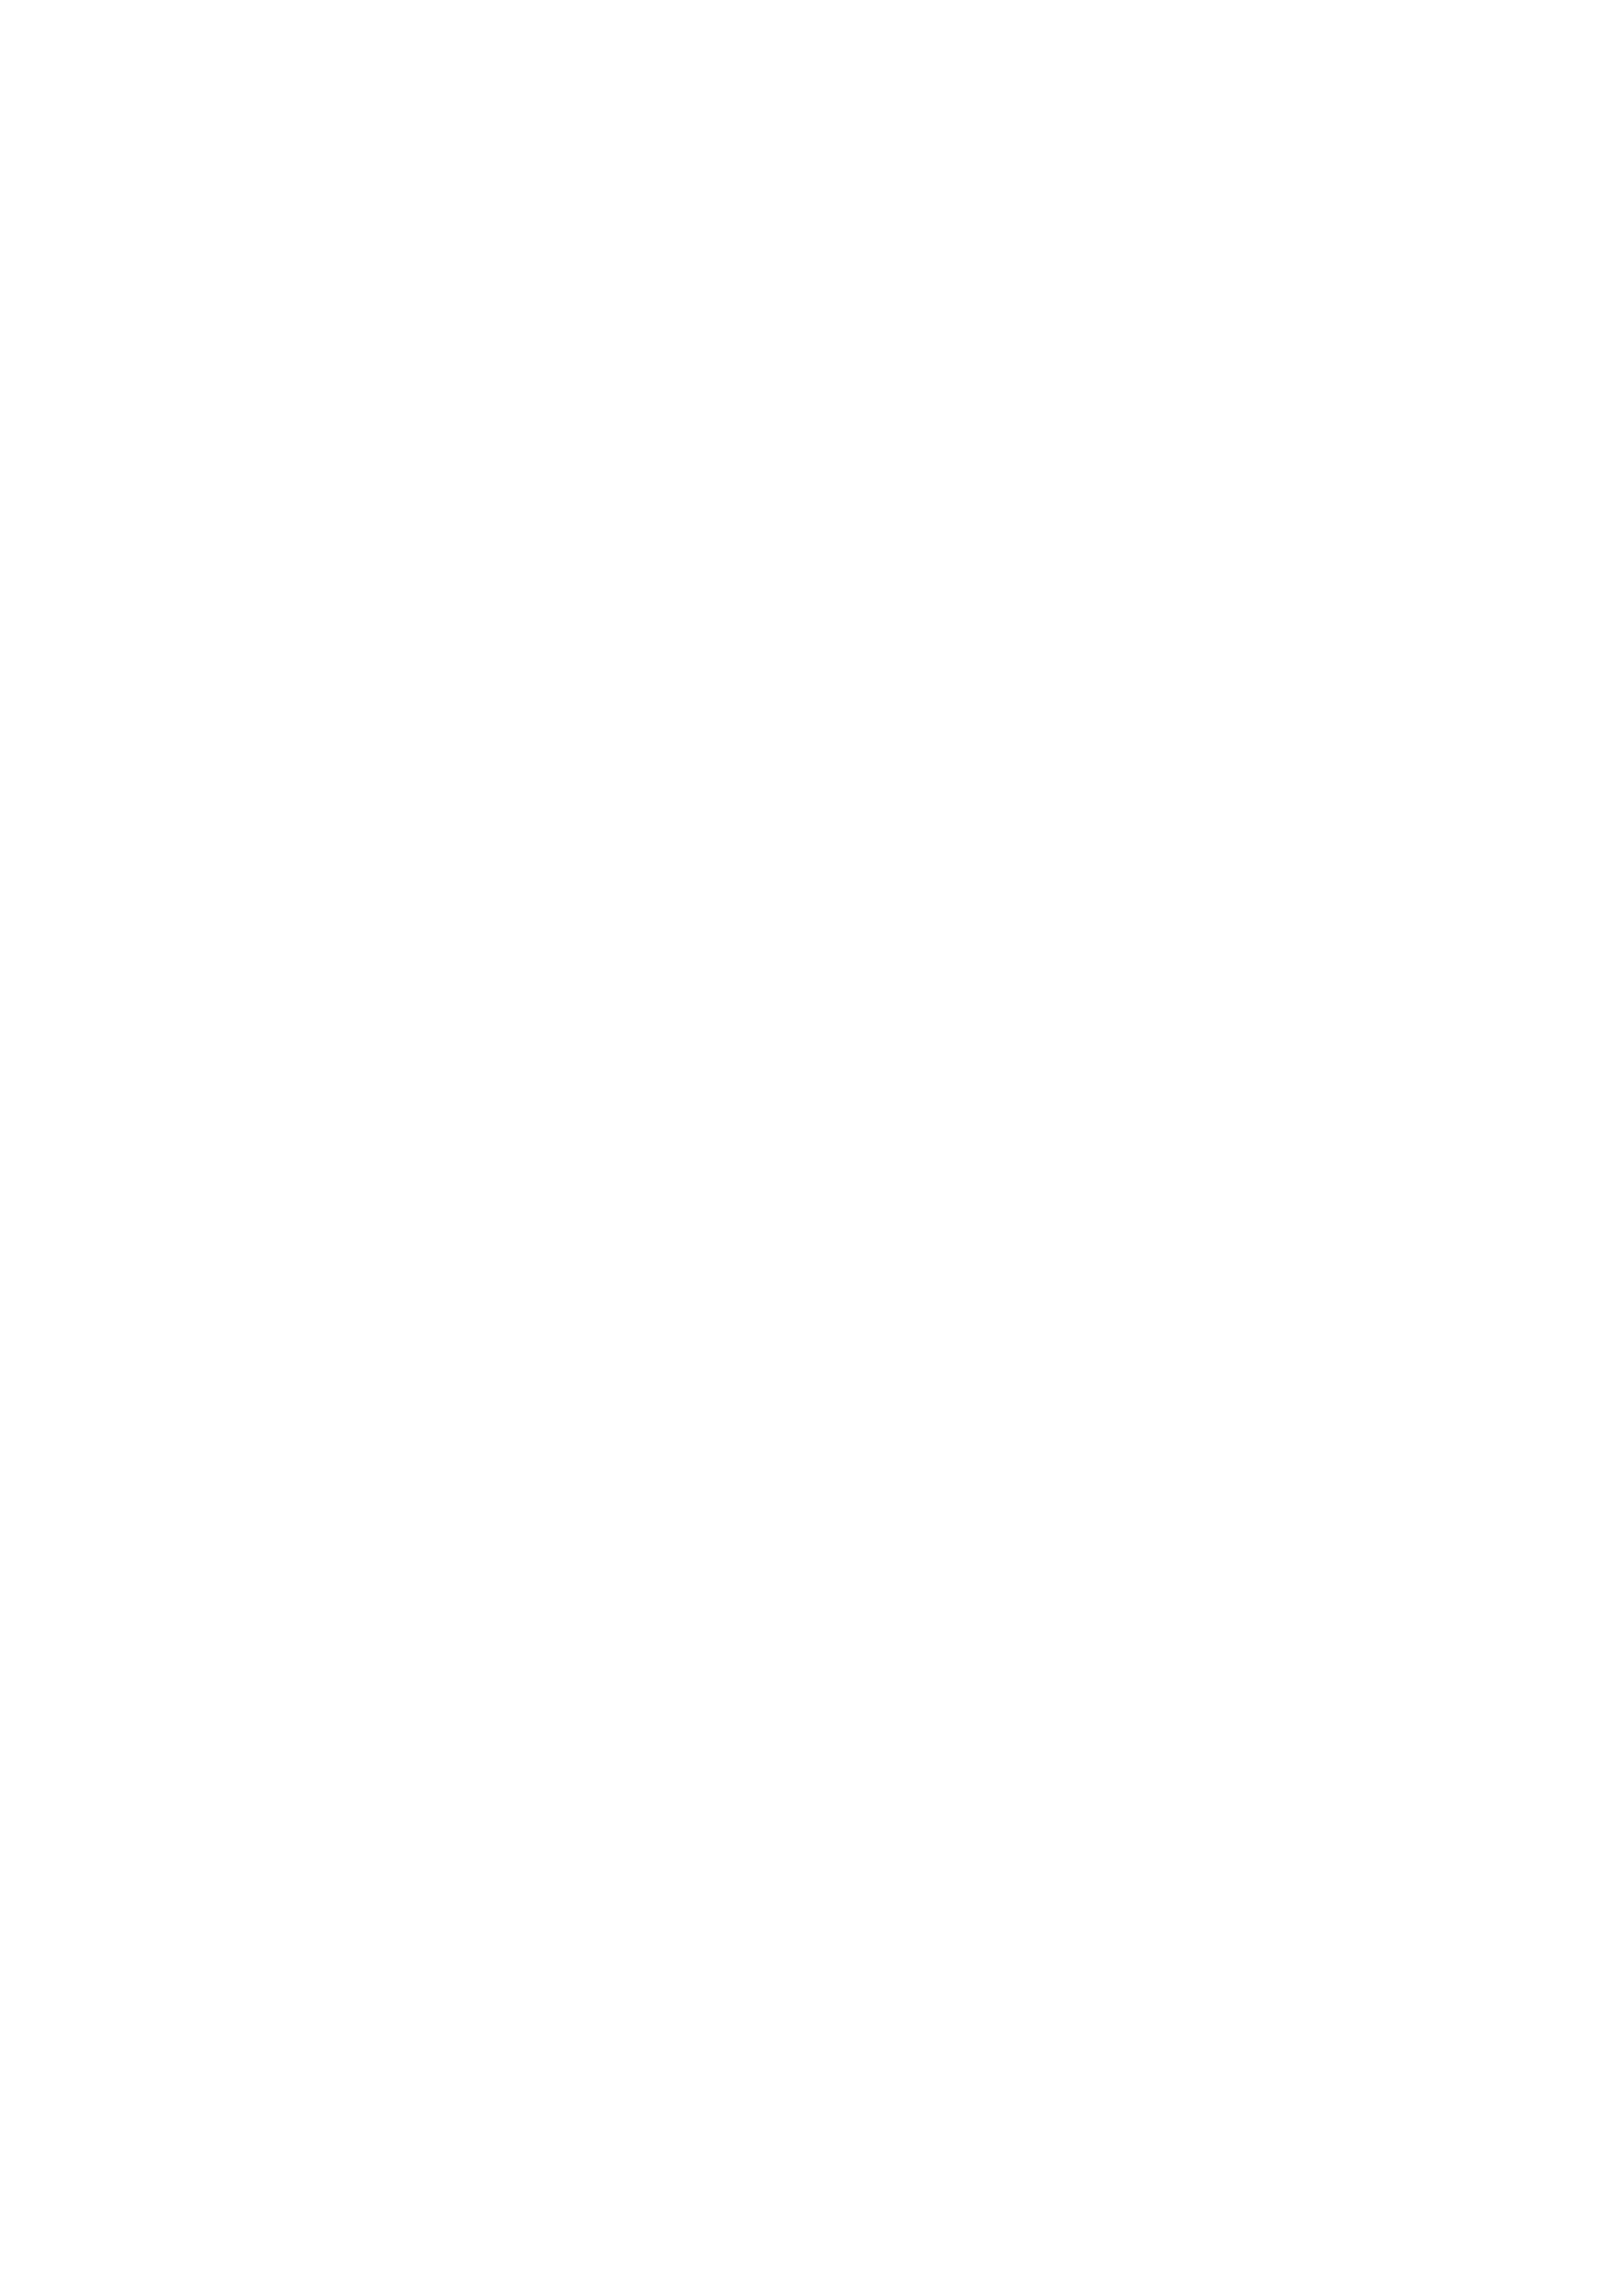 ГОСТ Р ИСО/МЭК 19795-1-2007. Страница 27